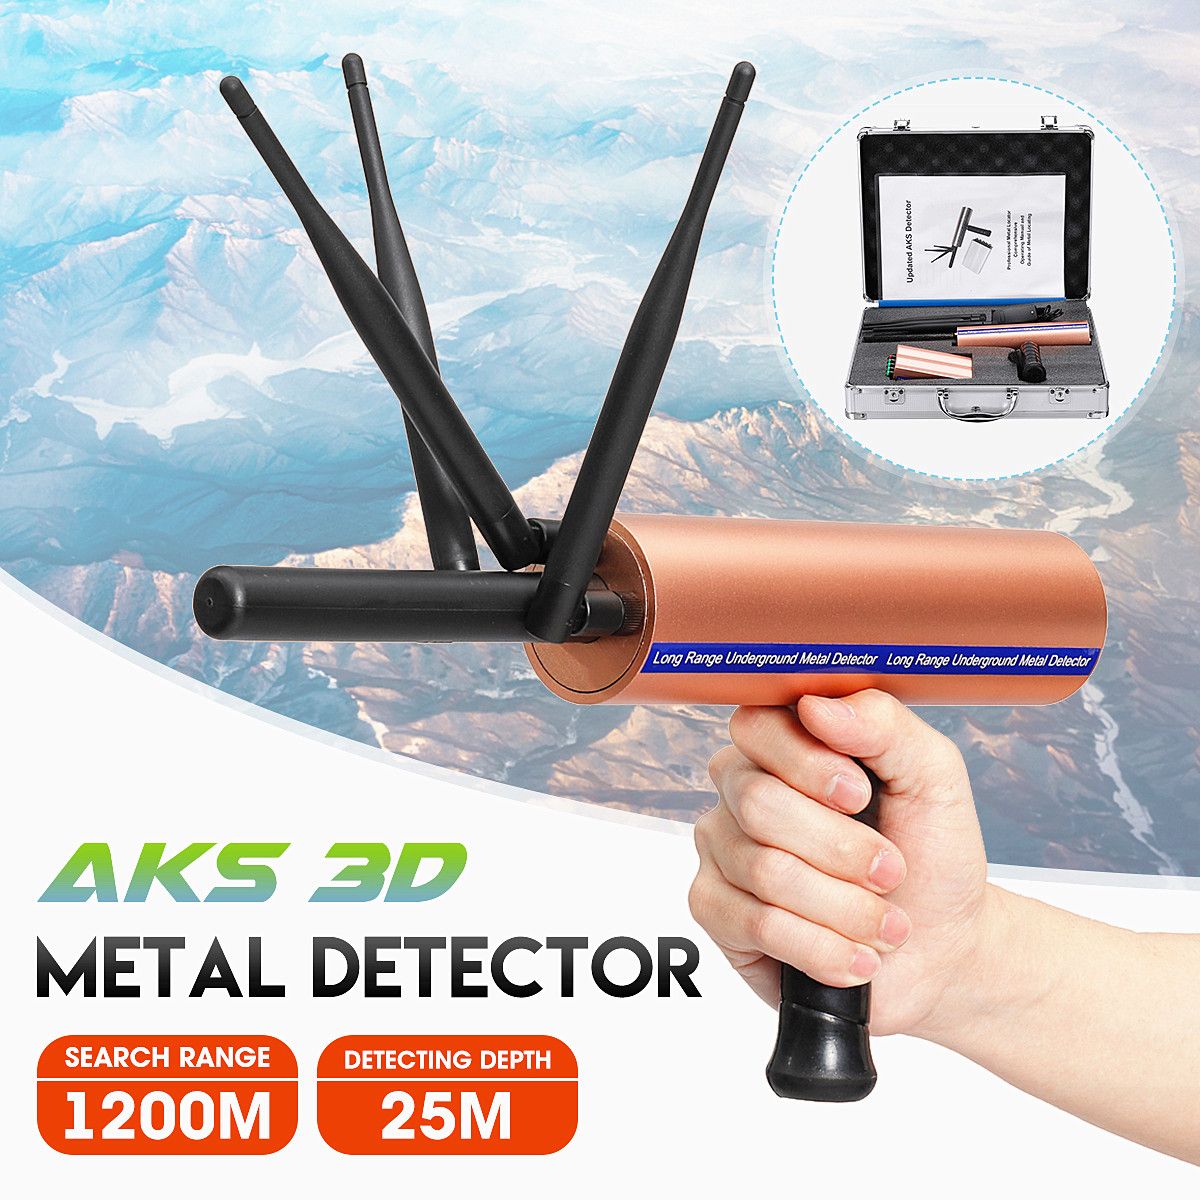 AKS-3D-Metal-Detector-Detective-1200m-Long-Range-Gold-Treasure-Digger-Scanner-1447444